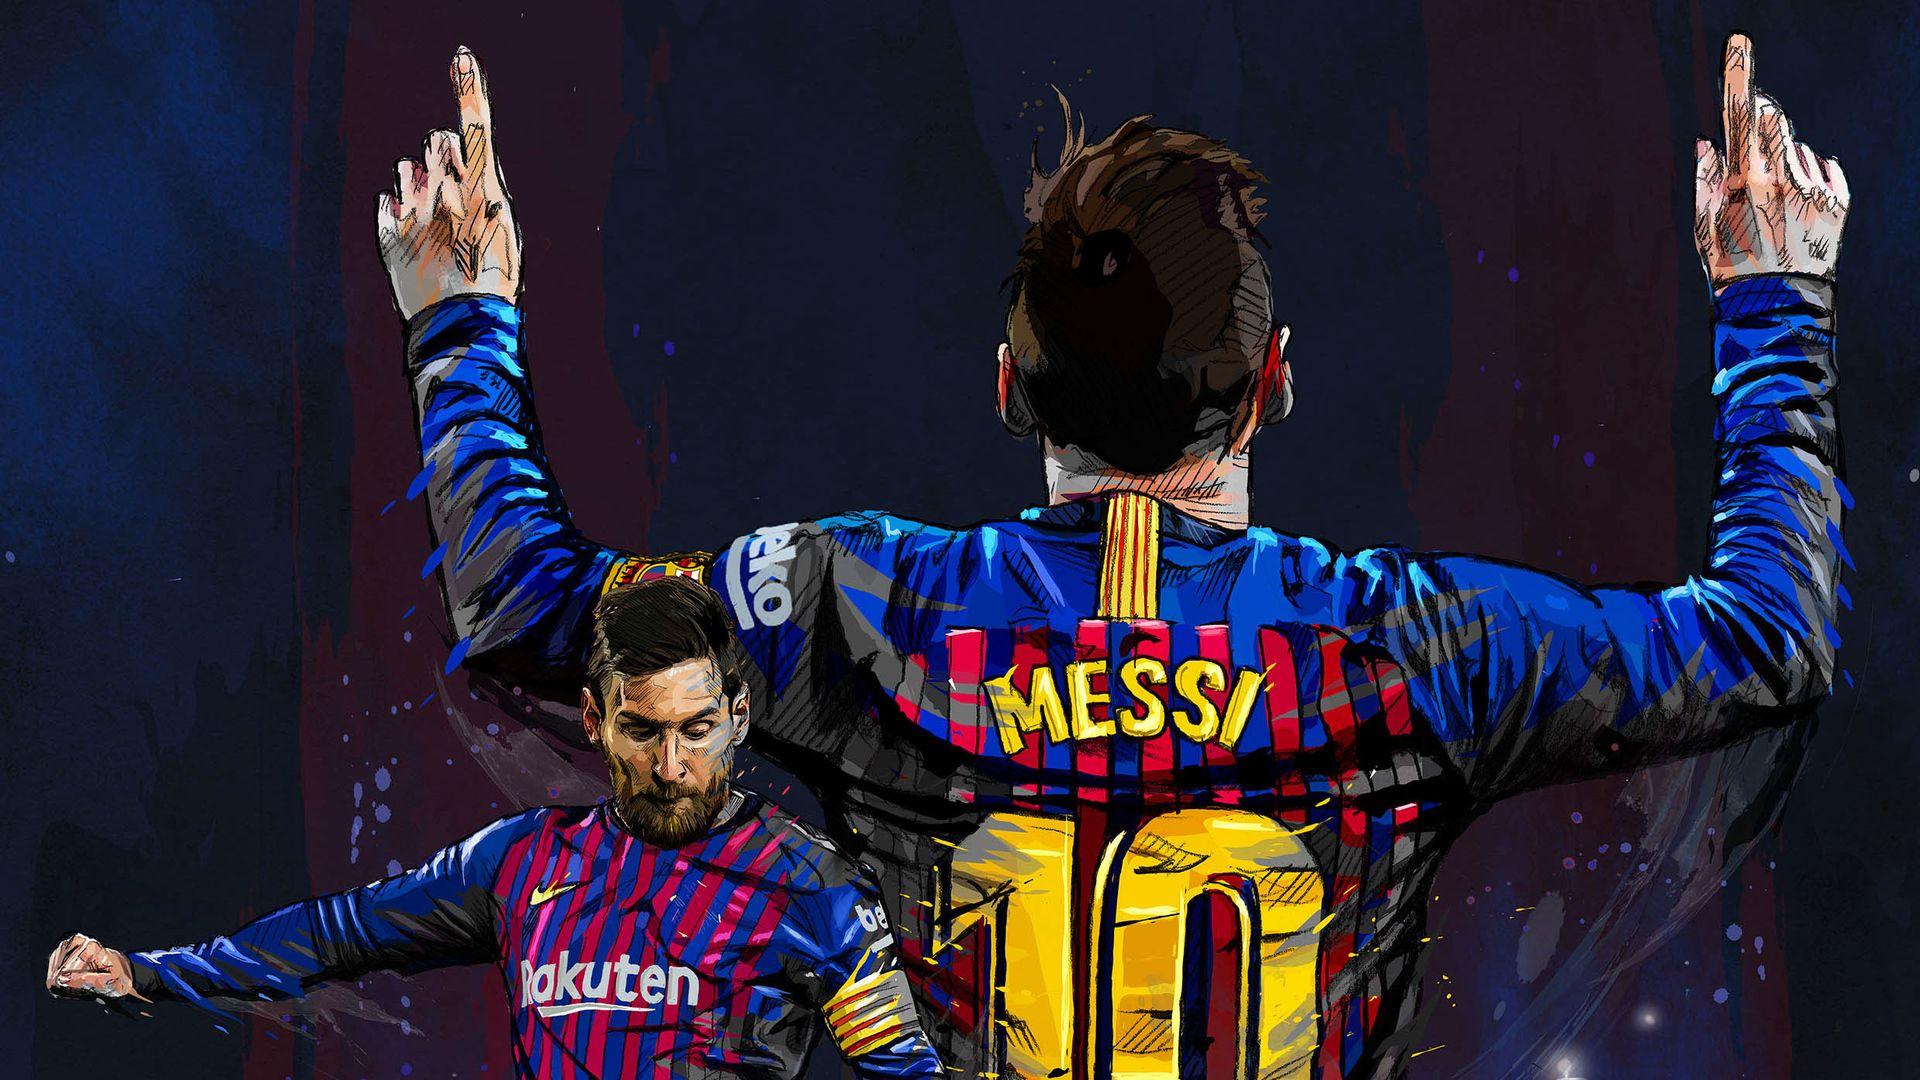 Hình nền laptop Messi không chỉ đẹp mắt mà còn đầy cảm hứng cho những fan hâm mộ Messi. Với hình ảnh chân dung siêu sao bóng đá này, bạn sẽ có một không gian làm việc đầy sức sống!